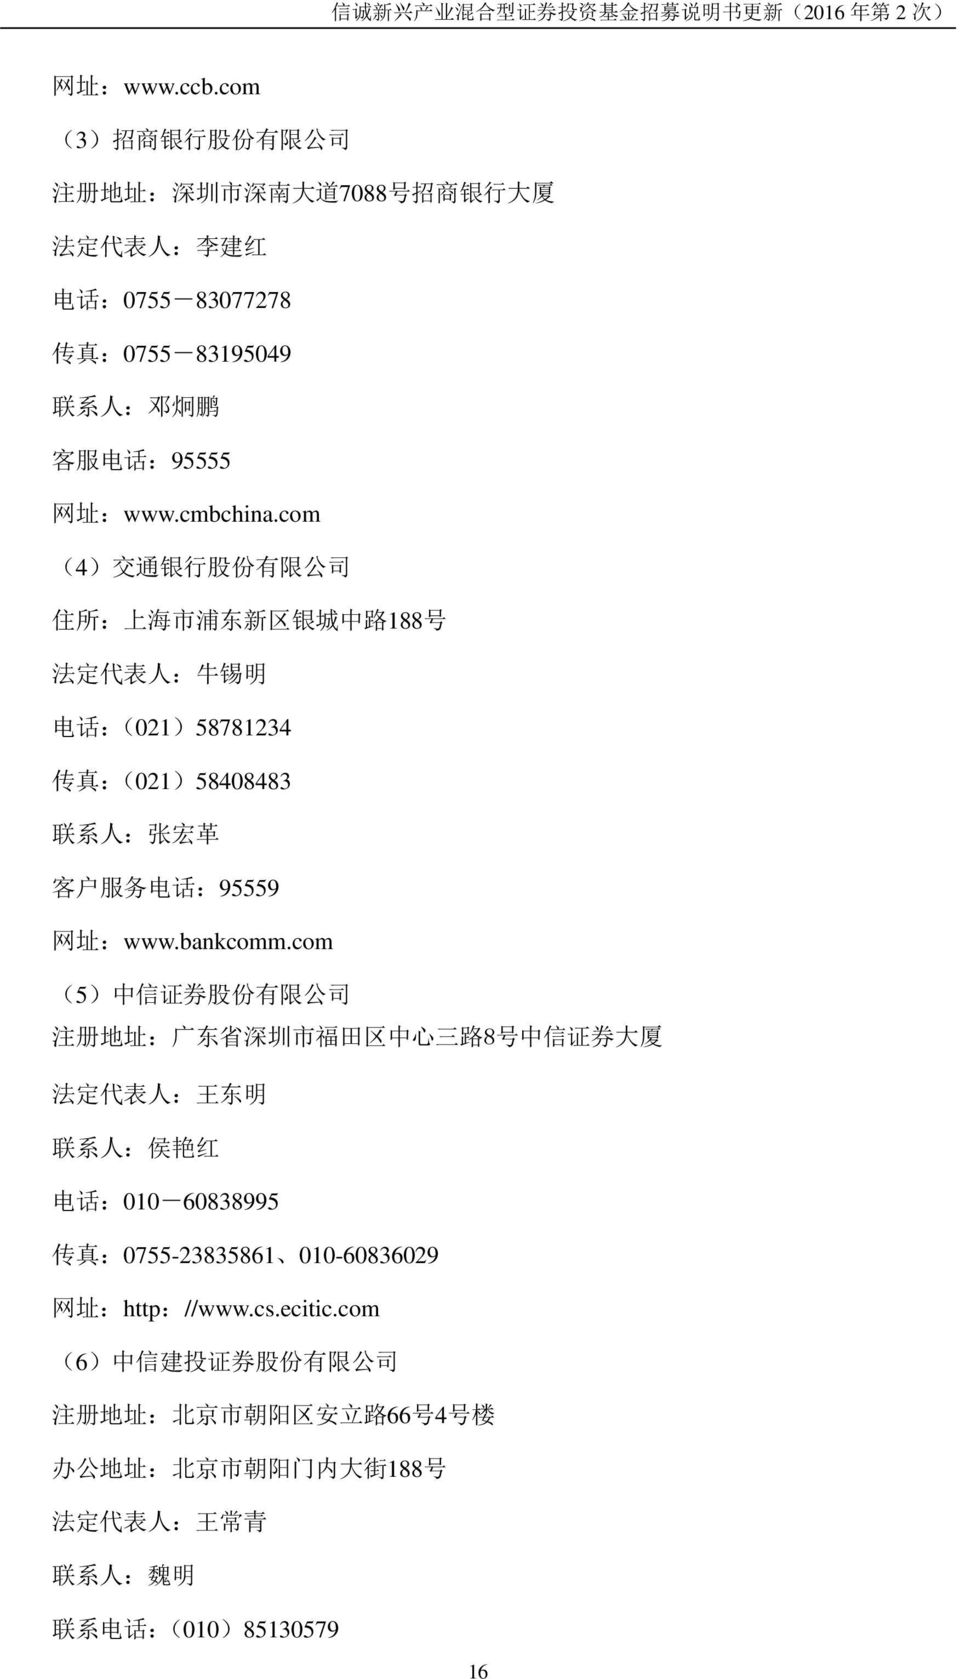 com (4) 交 通 银 行 股 份 有 限 公 司 住 所 : 上 海 市 浦 东 新 区 银 城 中 路 188 号 法 定 代 表 人 : 牛 锡 明 电 话 :(021)58781234 传 真 :(021)58408483 联 系 人 : 张 宏 革 客 户 服 务 电 话 :95559 网 址 :www.bankcomm.